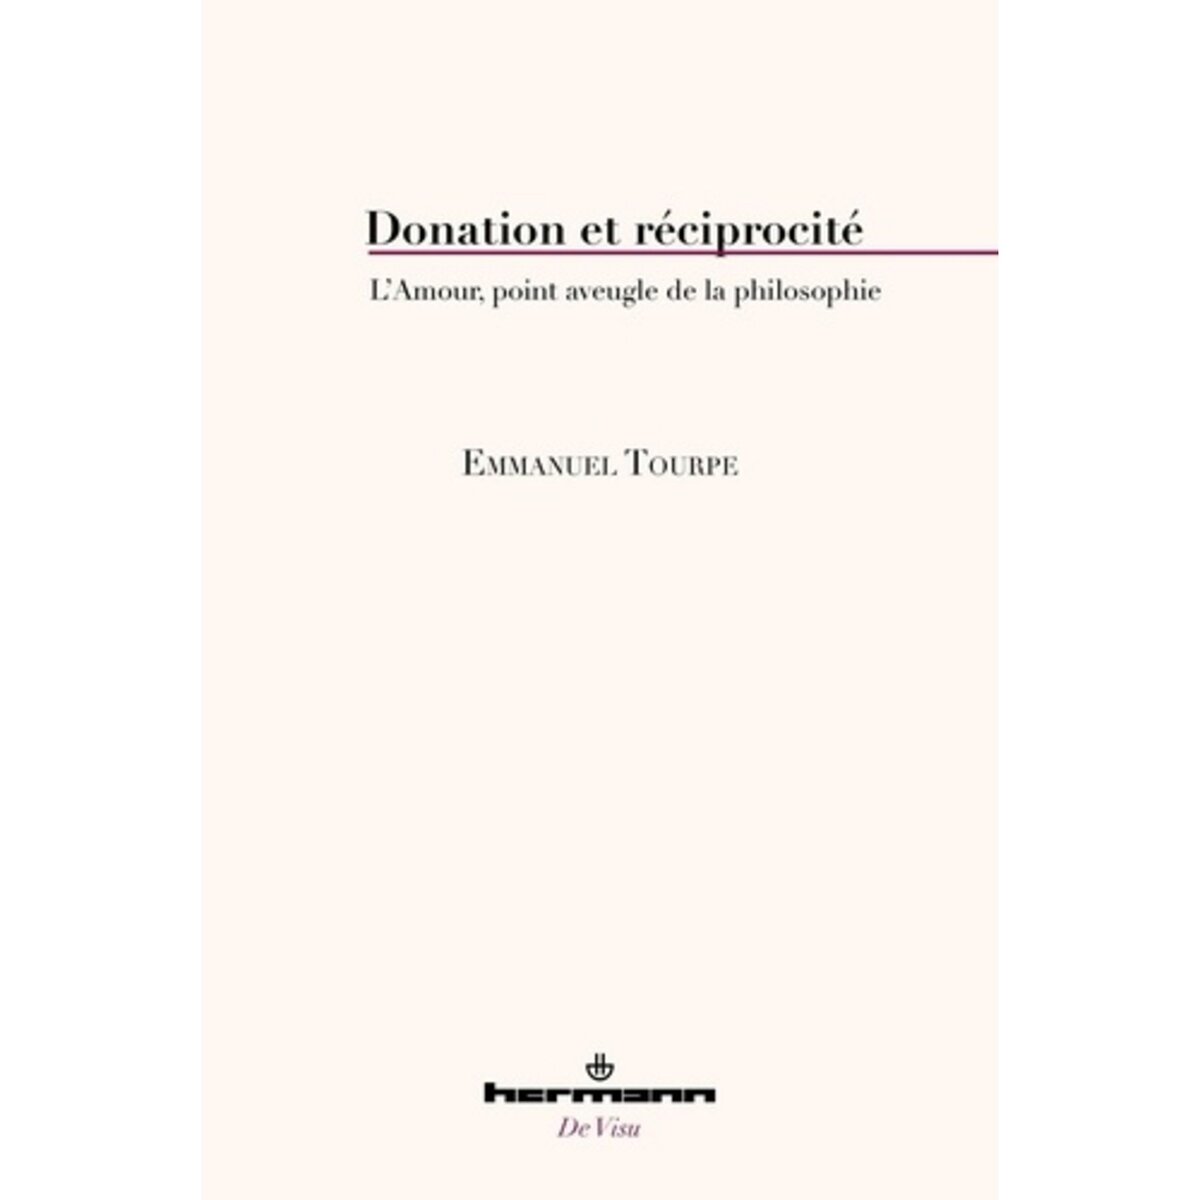  DONATION ET RECIPROCITE. L'AMOUR, POINT AVEUGLE DE LA PHILOSOPHIE, Tourpe Emmanuel